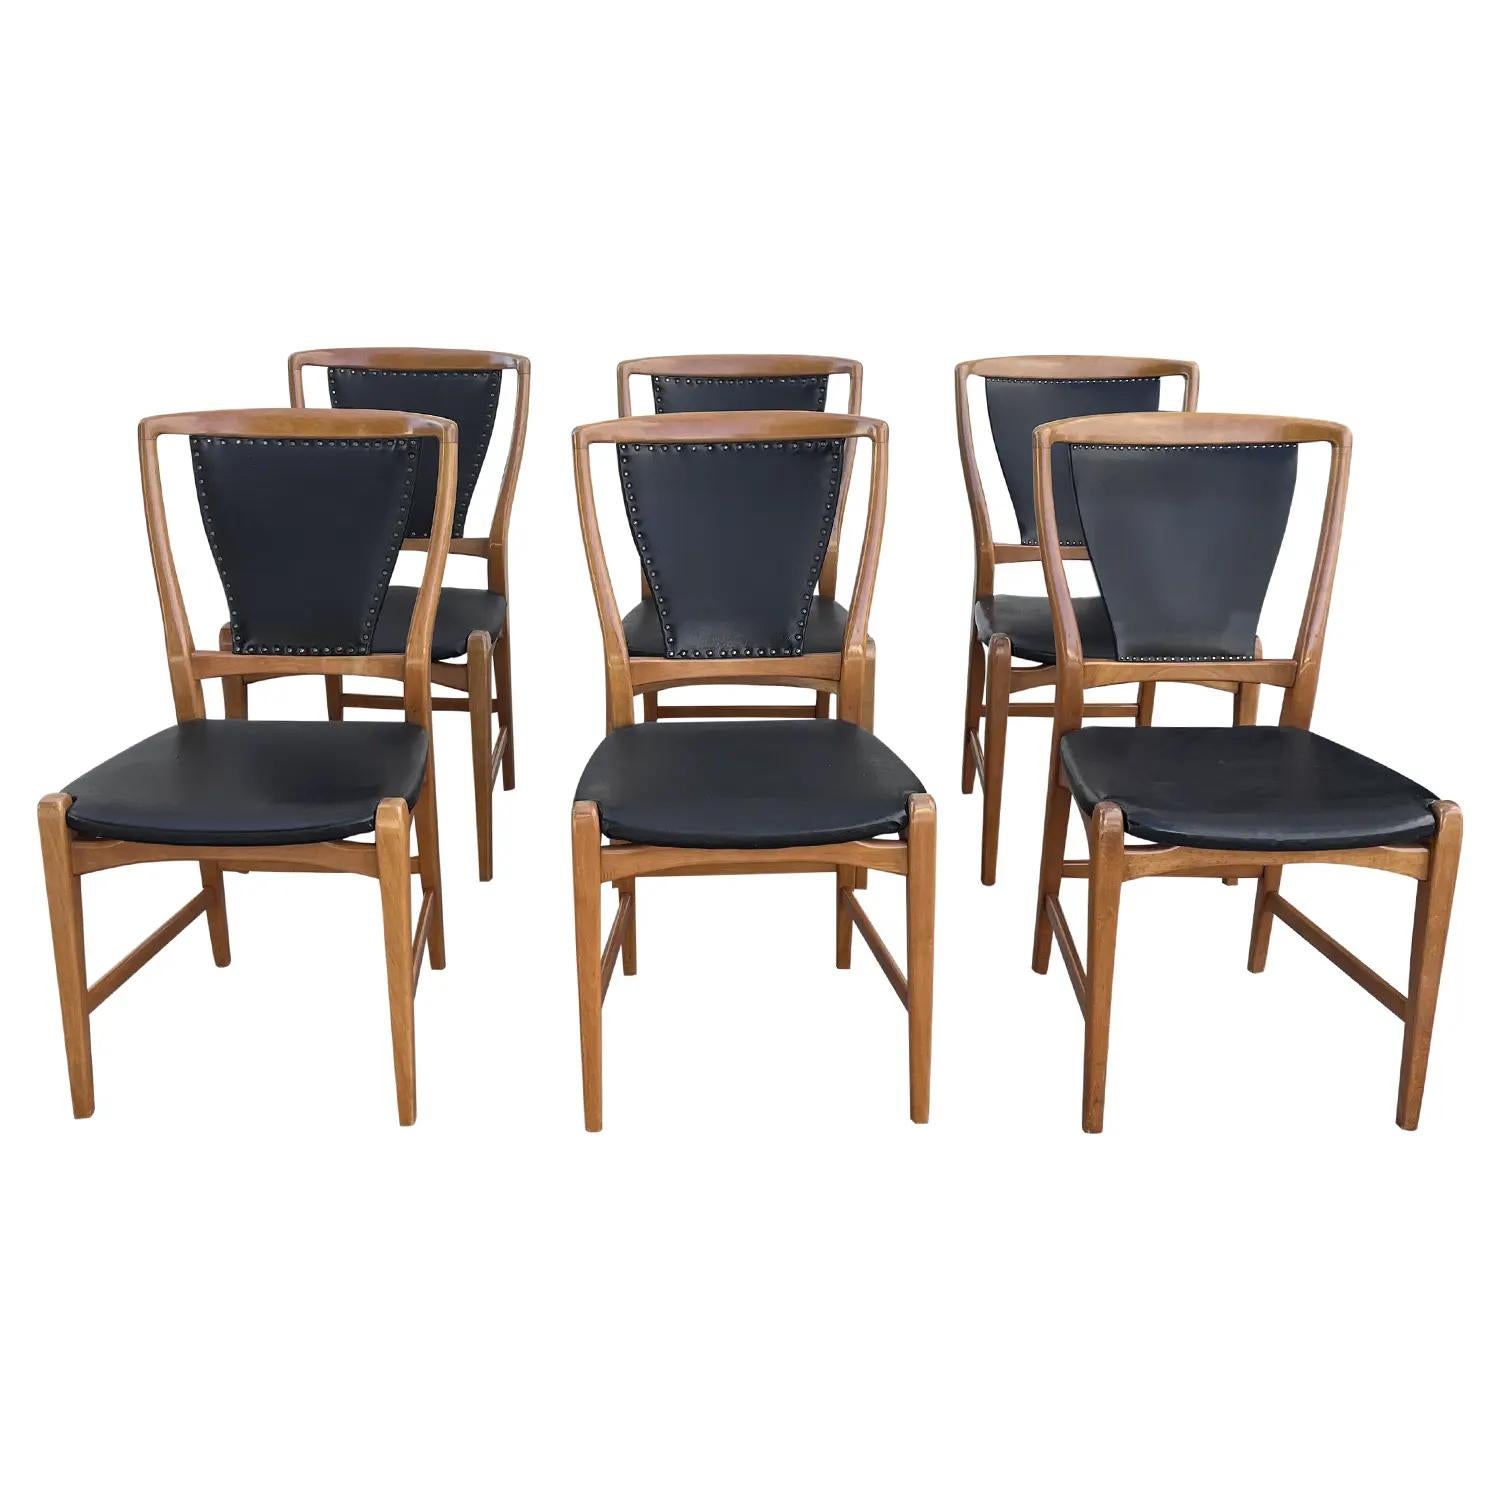 Ein schwarzes, schwedisches Mid-Century modernes Set von sechs Esszimmerstühlen aus handgefertigtem Birnbaumholz, entworfen und hergestellt von einem unbekannten Architekten aus Stockholm, in gutem Zustand. Die Sitzfläche und die Rückenlehne der